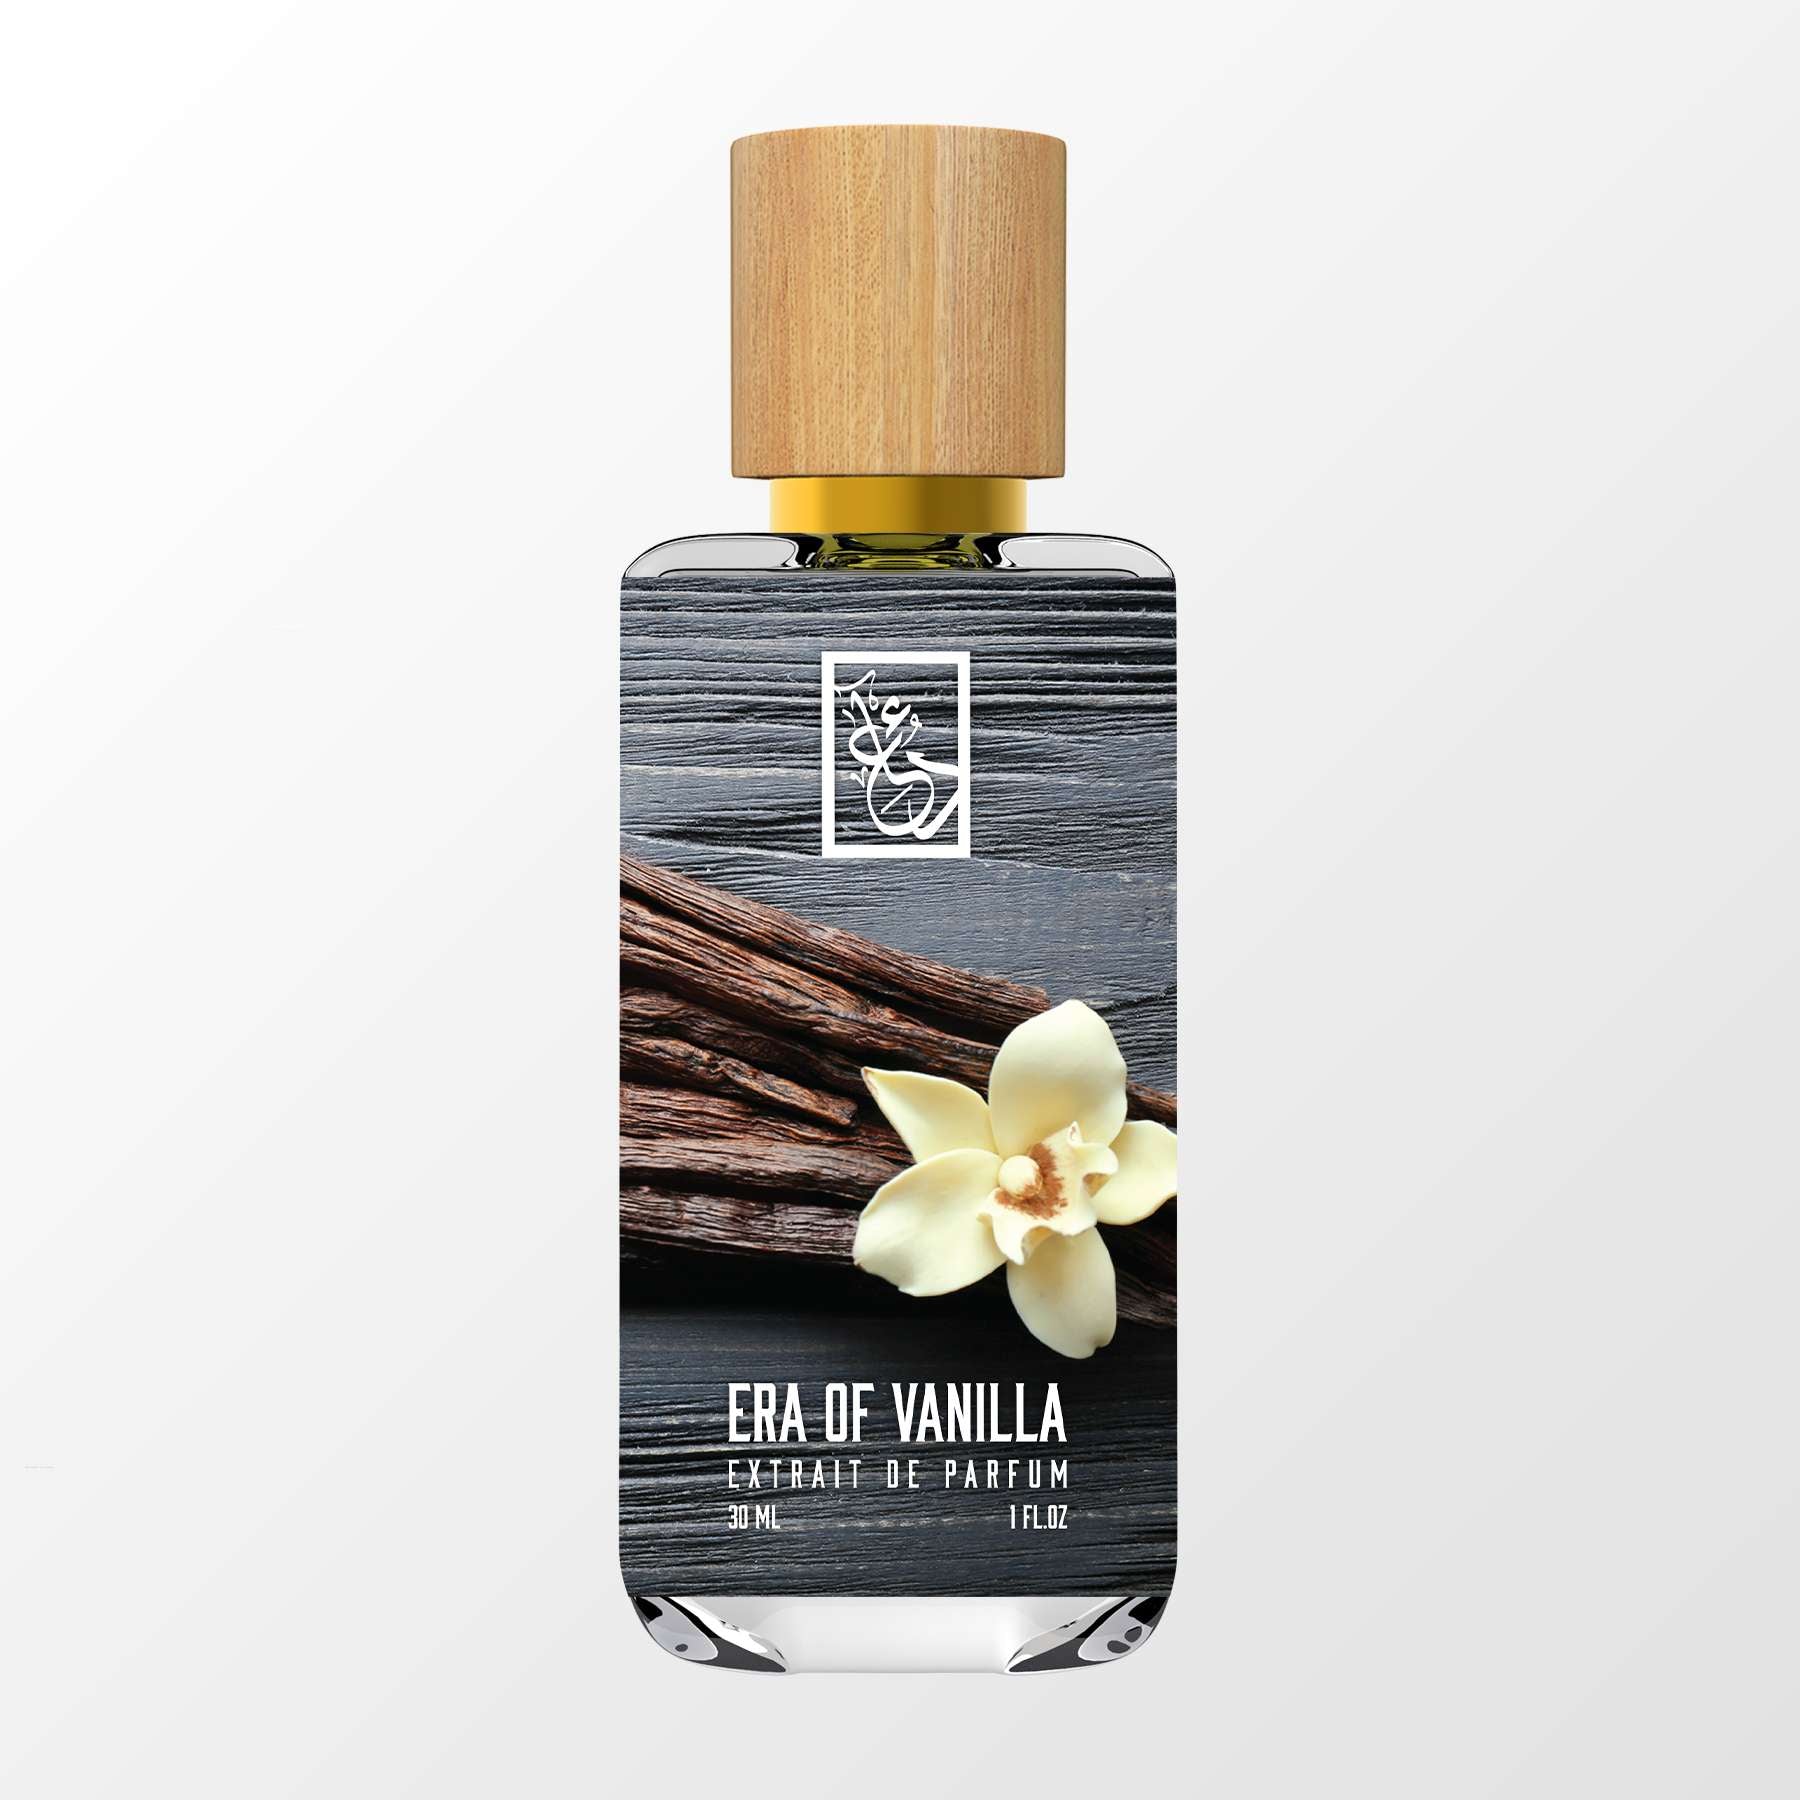 Era of Vanilla